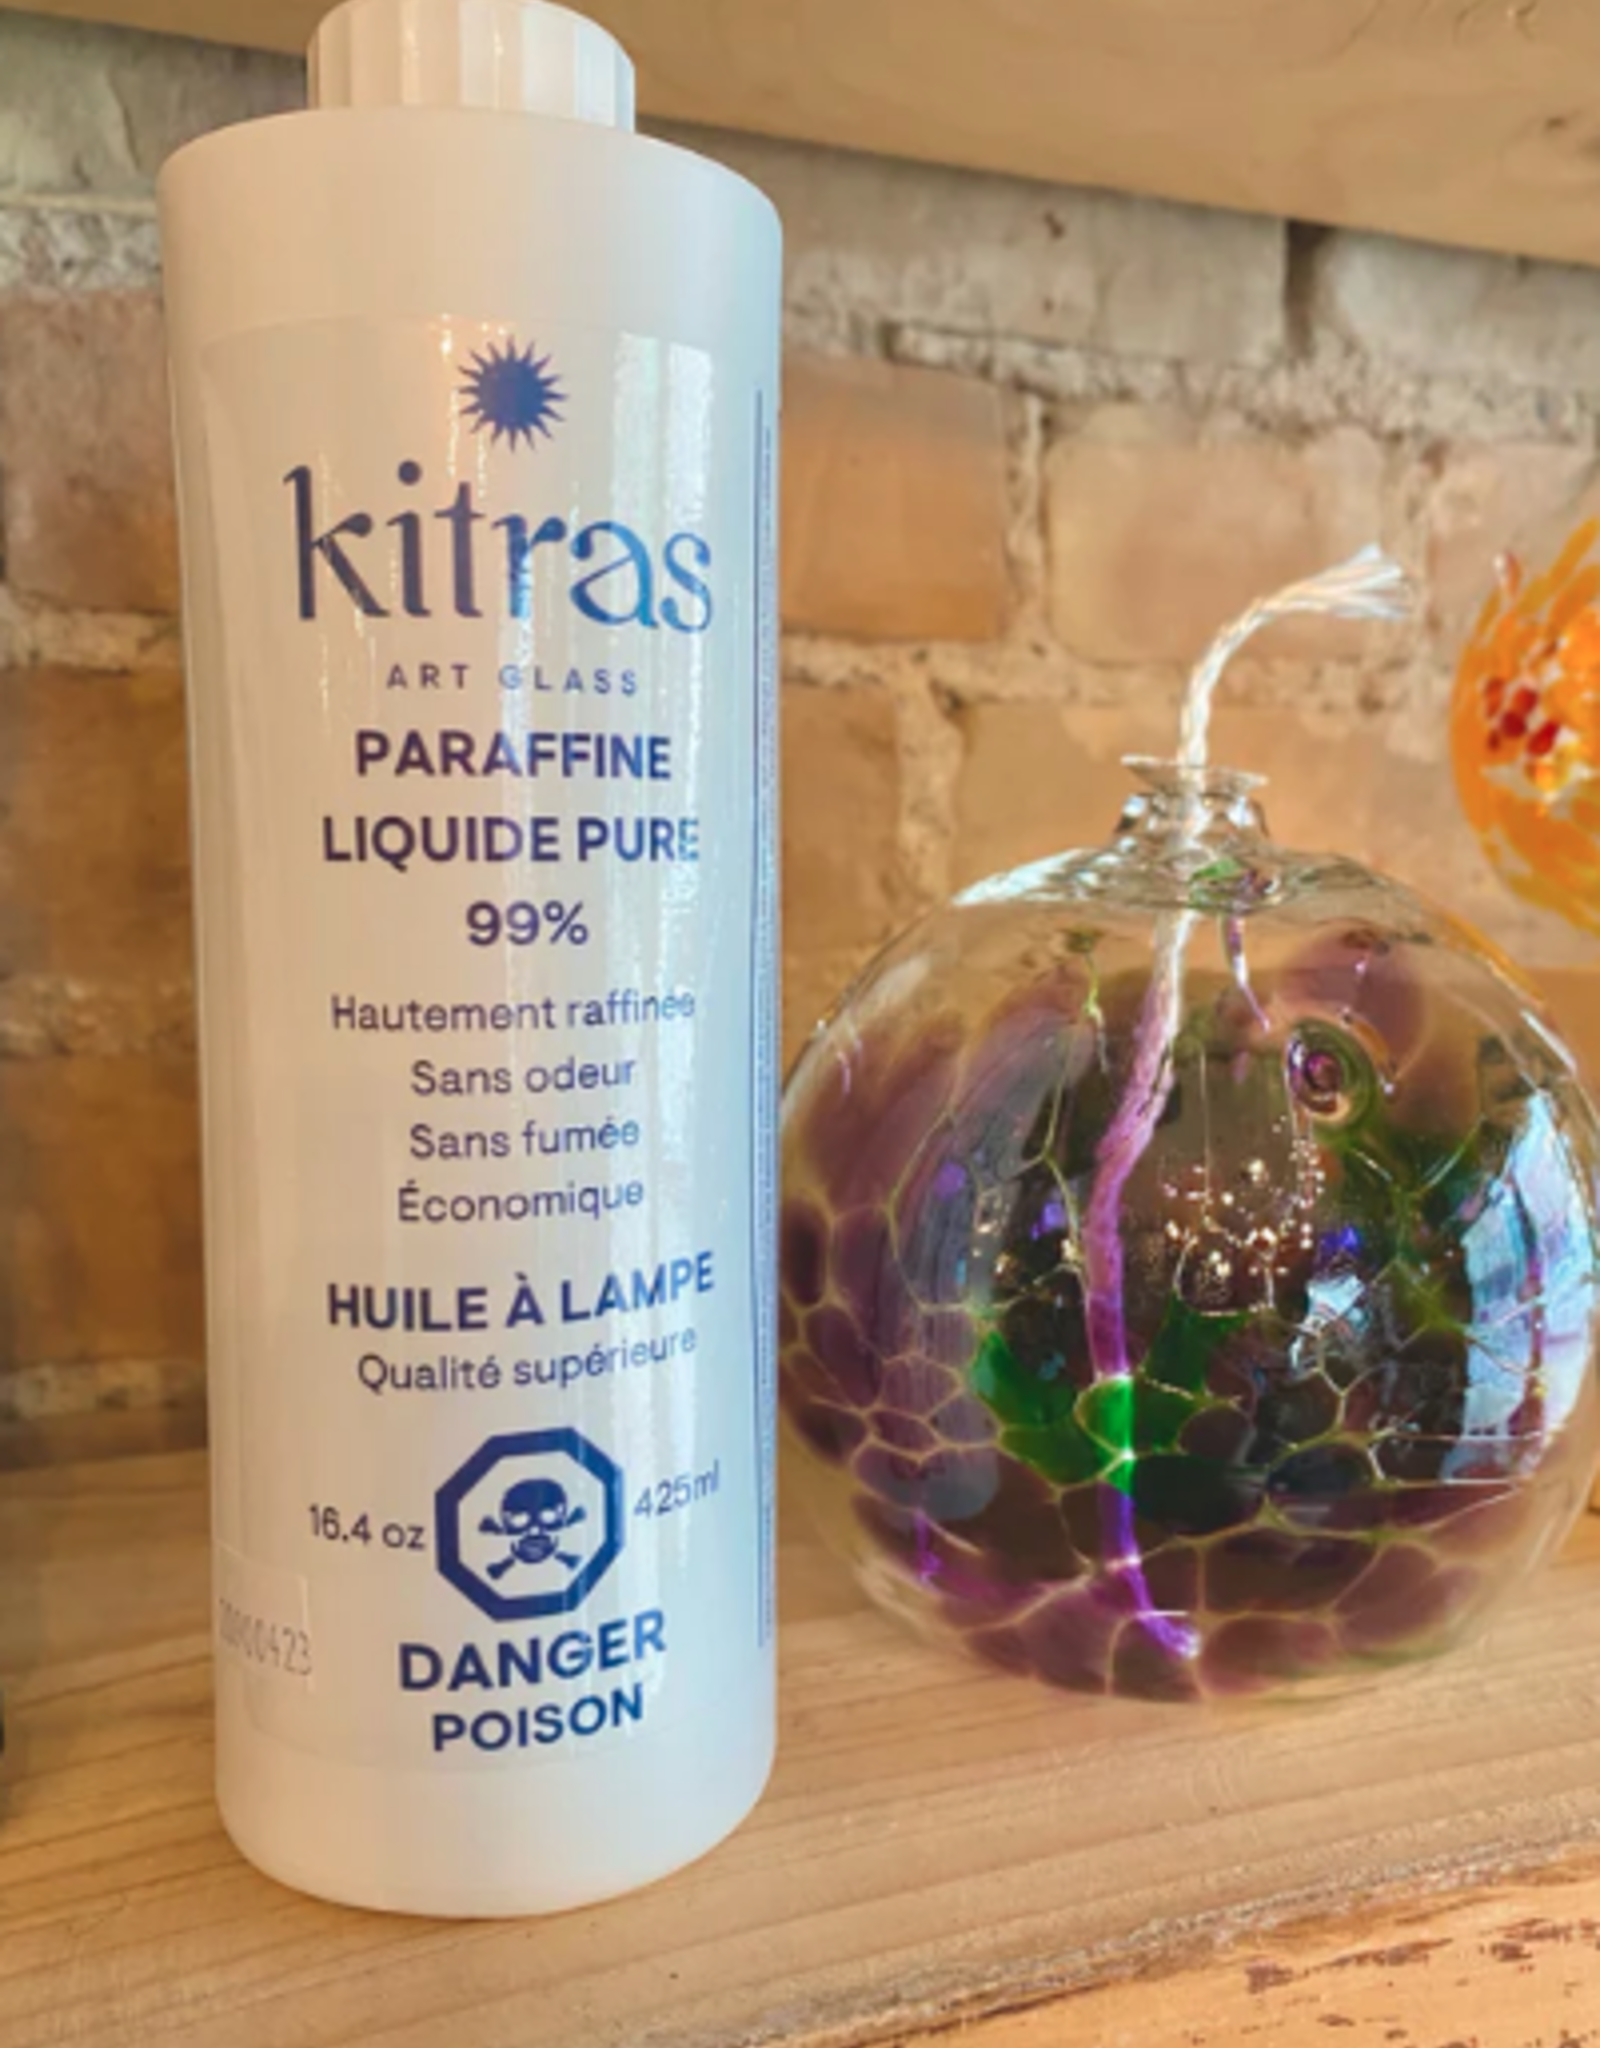 Kitras Art Glass Paraffin Liquid